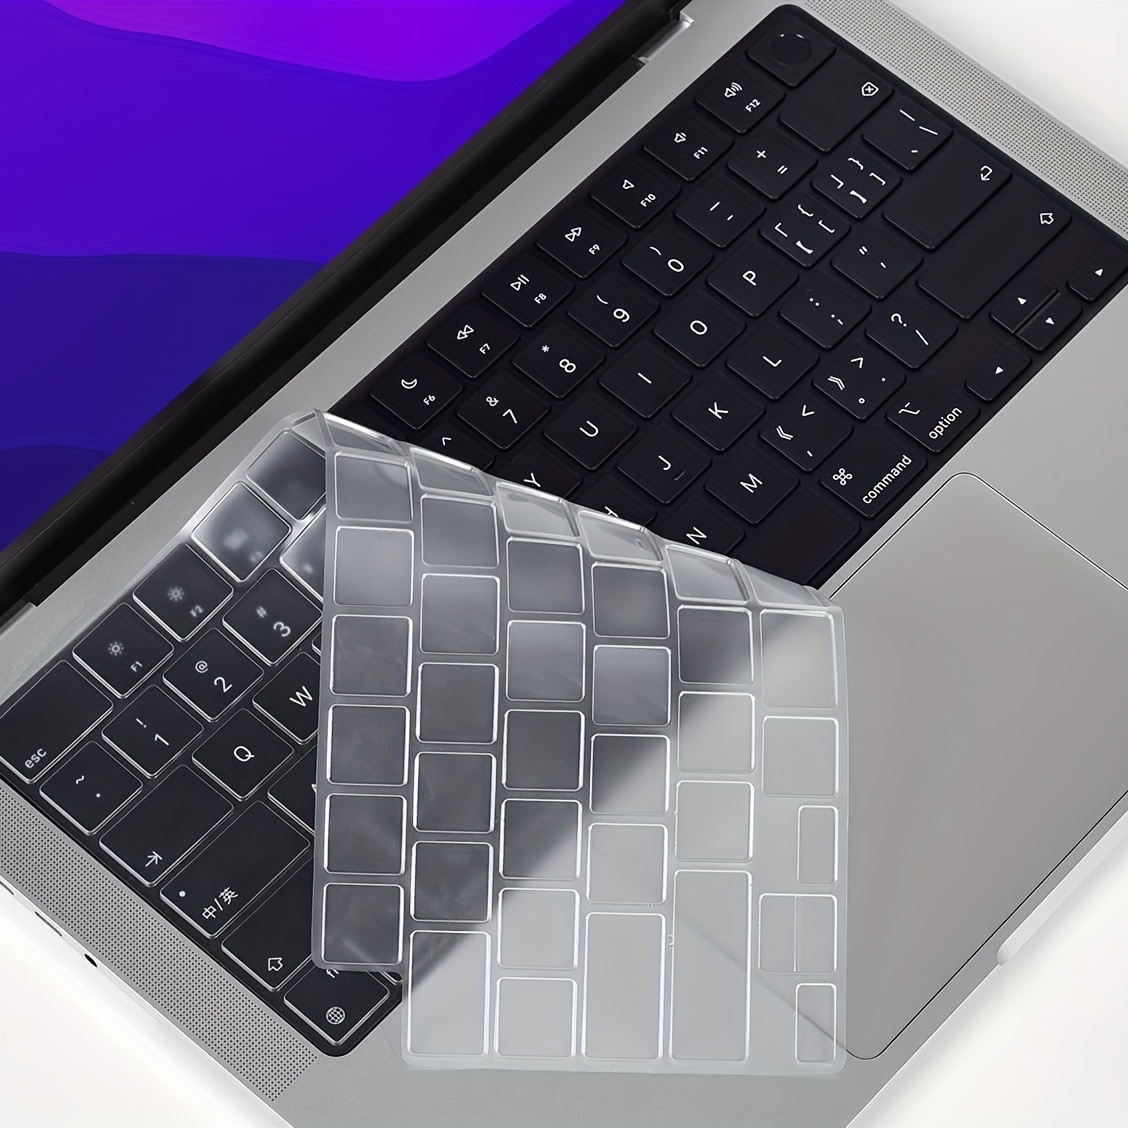 TECOOL Coque pour MacBook Pro 14 Pouces 2021 avec Puce M1 Pro/Max